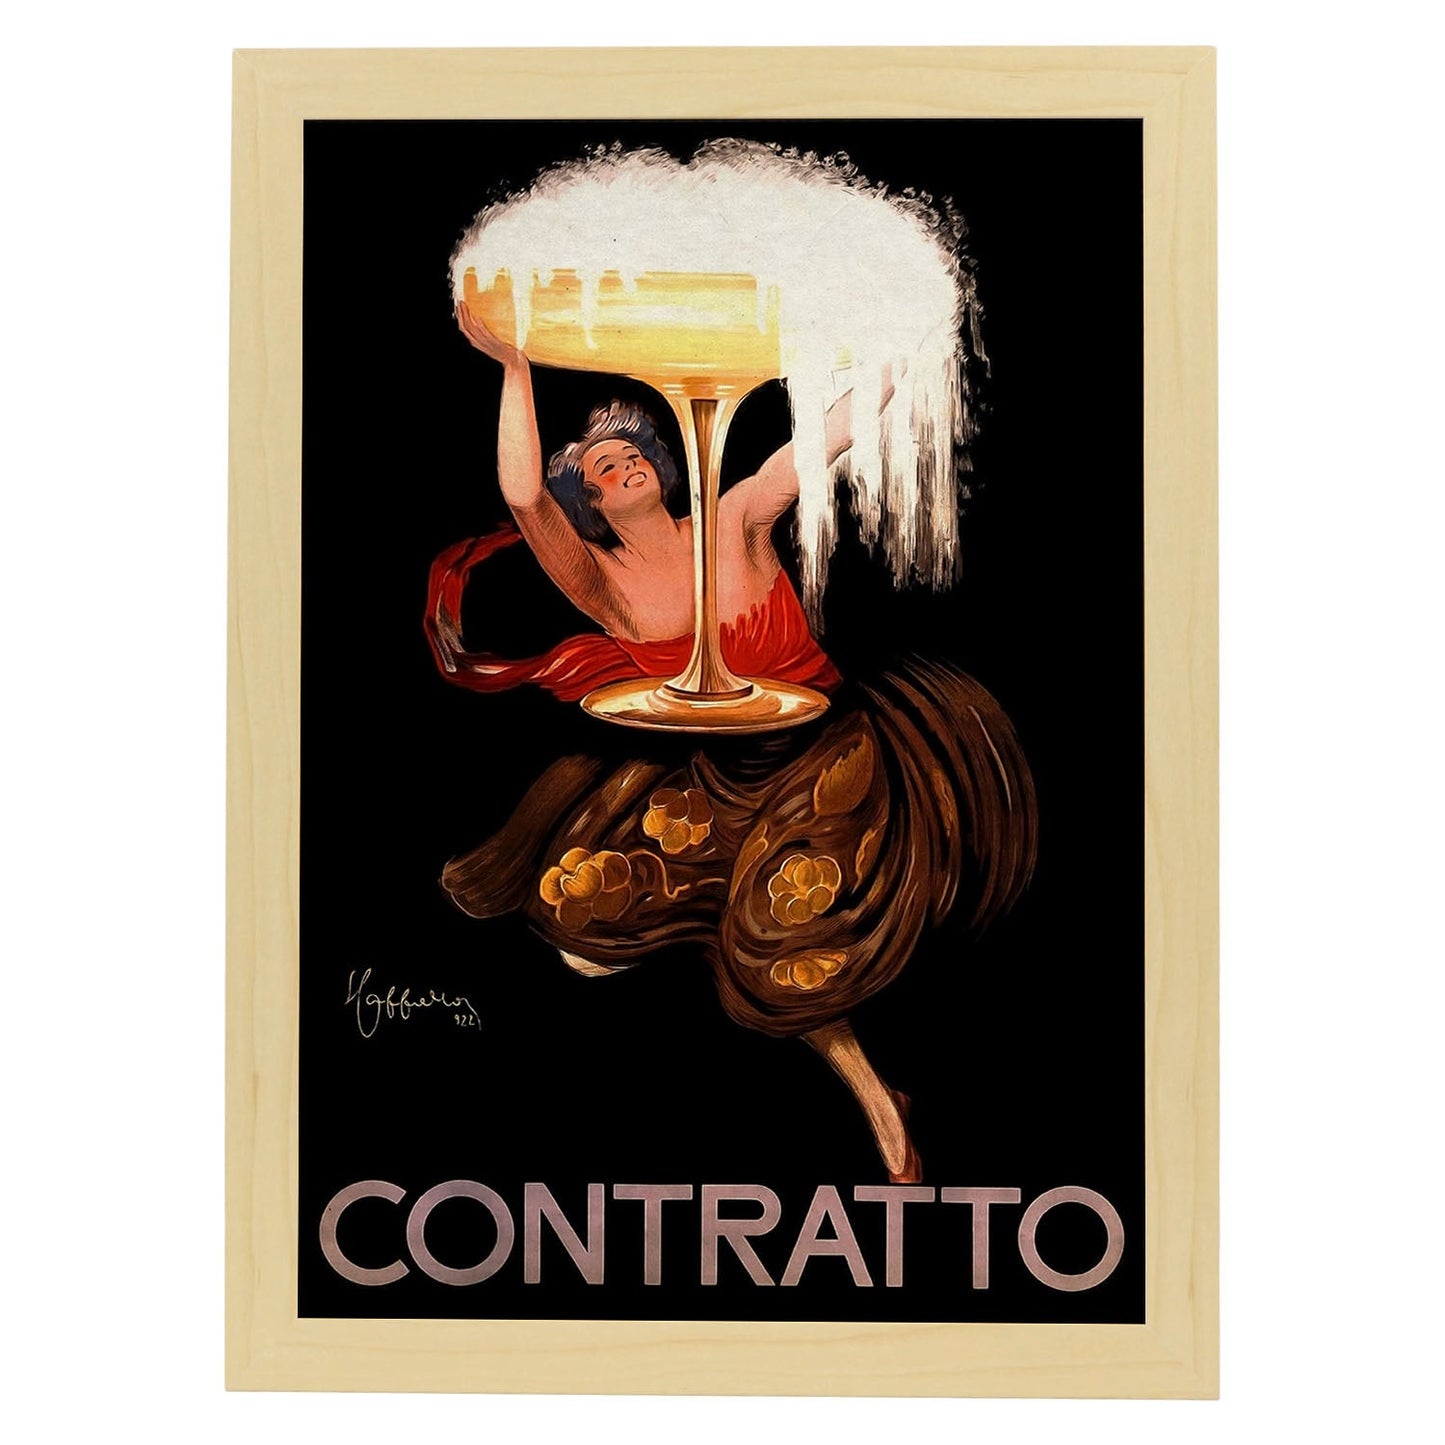 Poster vintage de Contratto. con imágenes vintage y de publicidad antigua.-Artwork-Nacnic-A4-Marco Madera clara-Nacnic Estudio SL